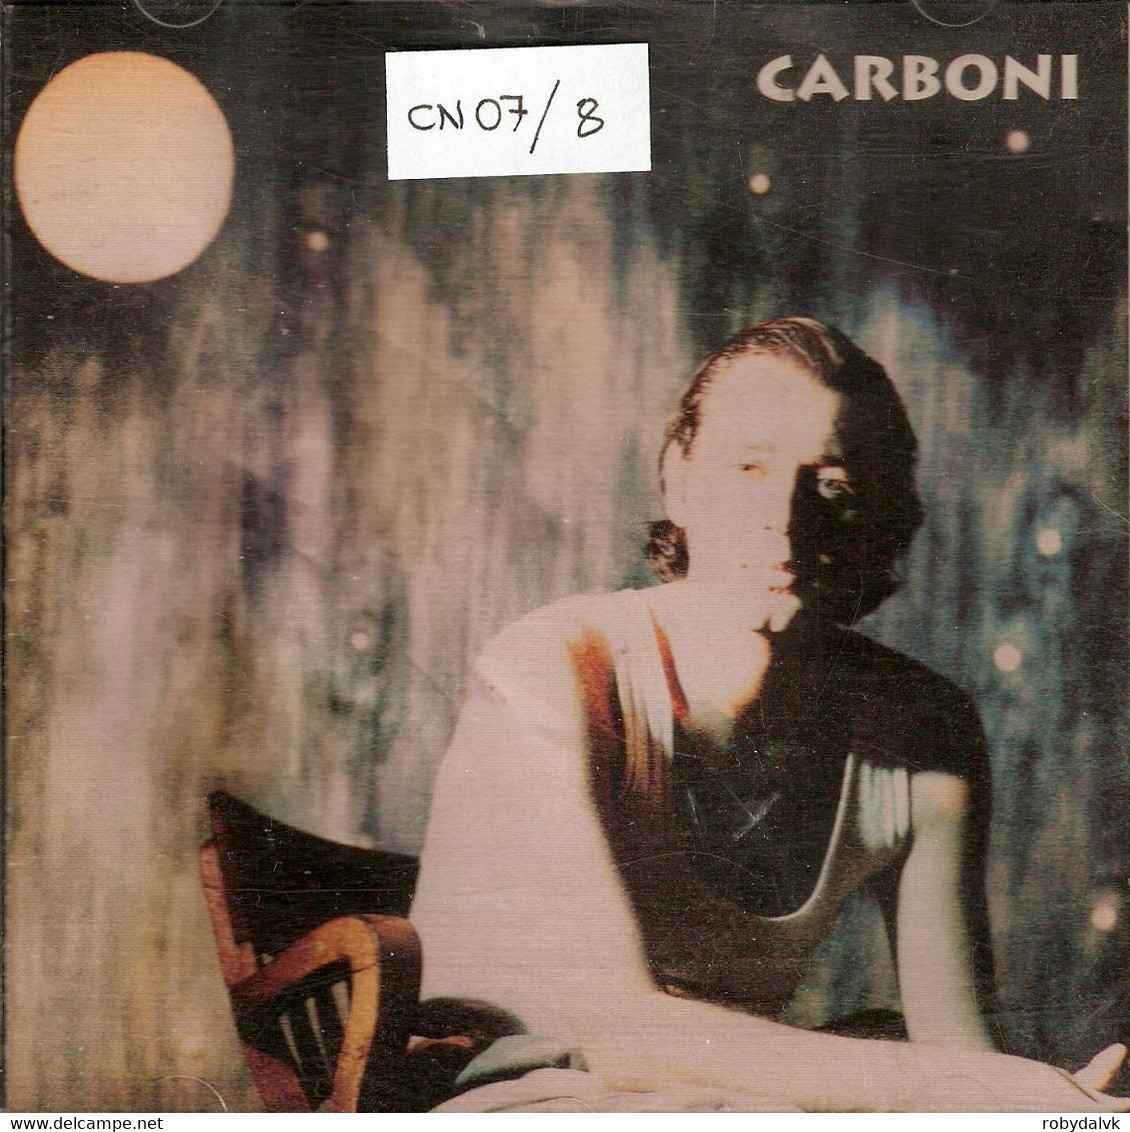 CN07 - LUCA CARBONI : CARBONI - Sonstige - Italienische Musik